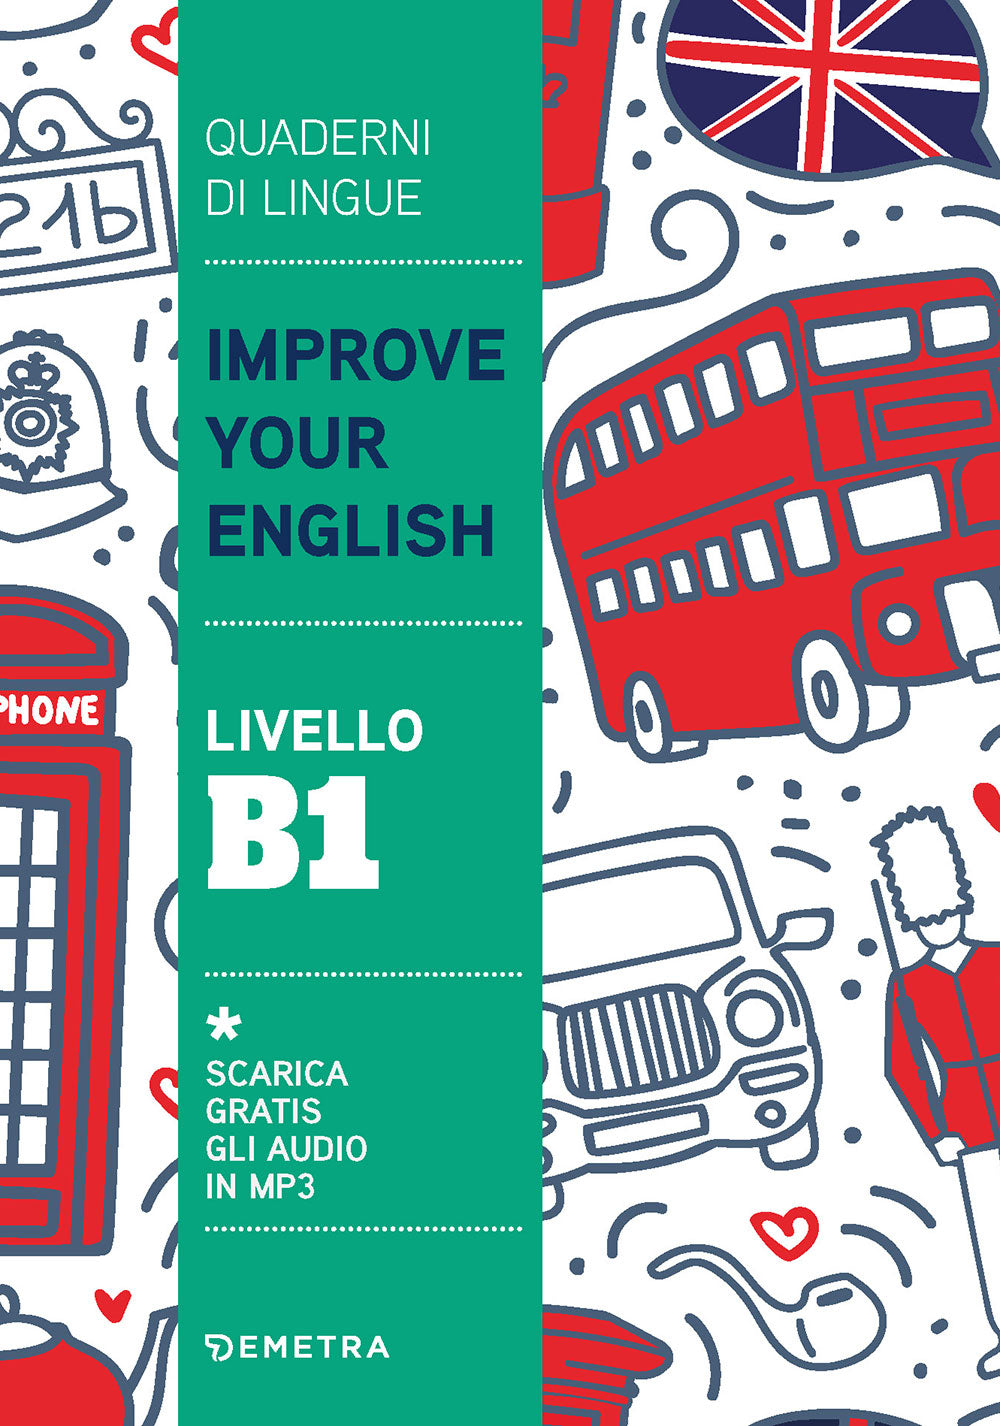 Improve Your English livello B1. Scarica gratis gli audio in MP3